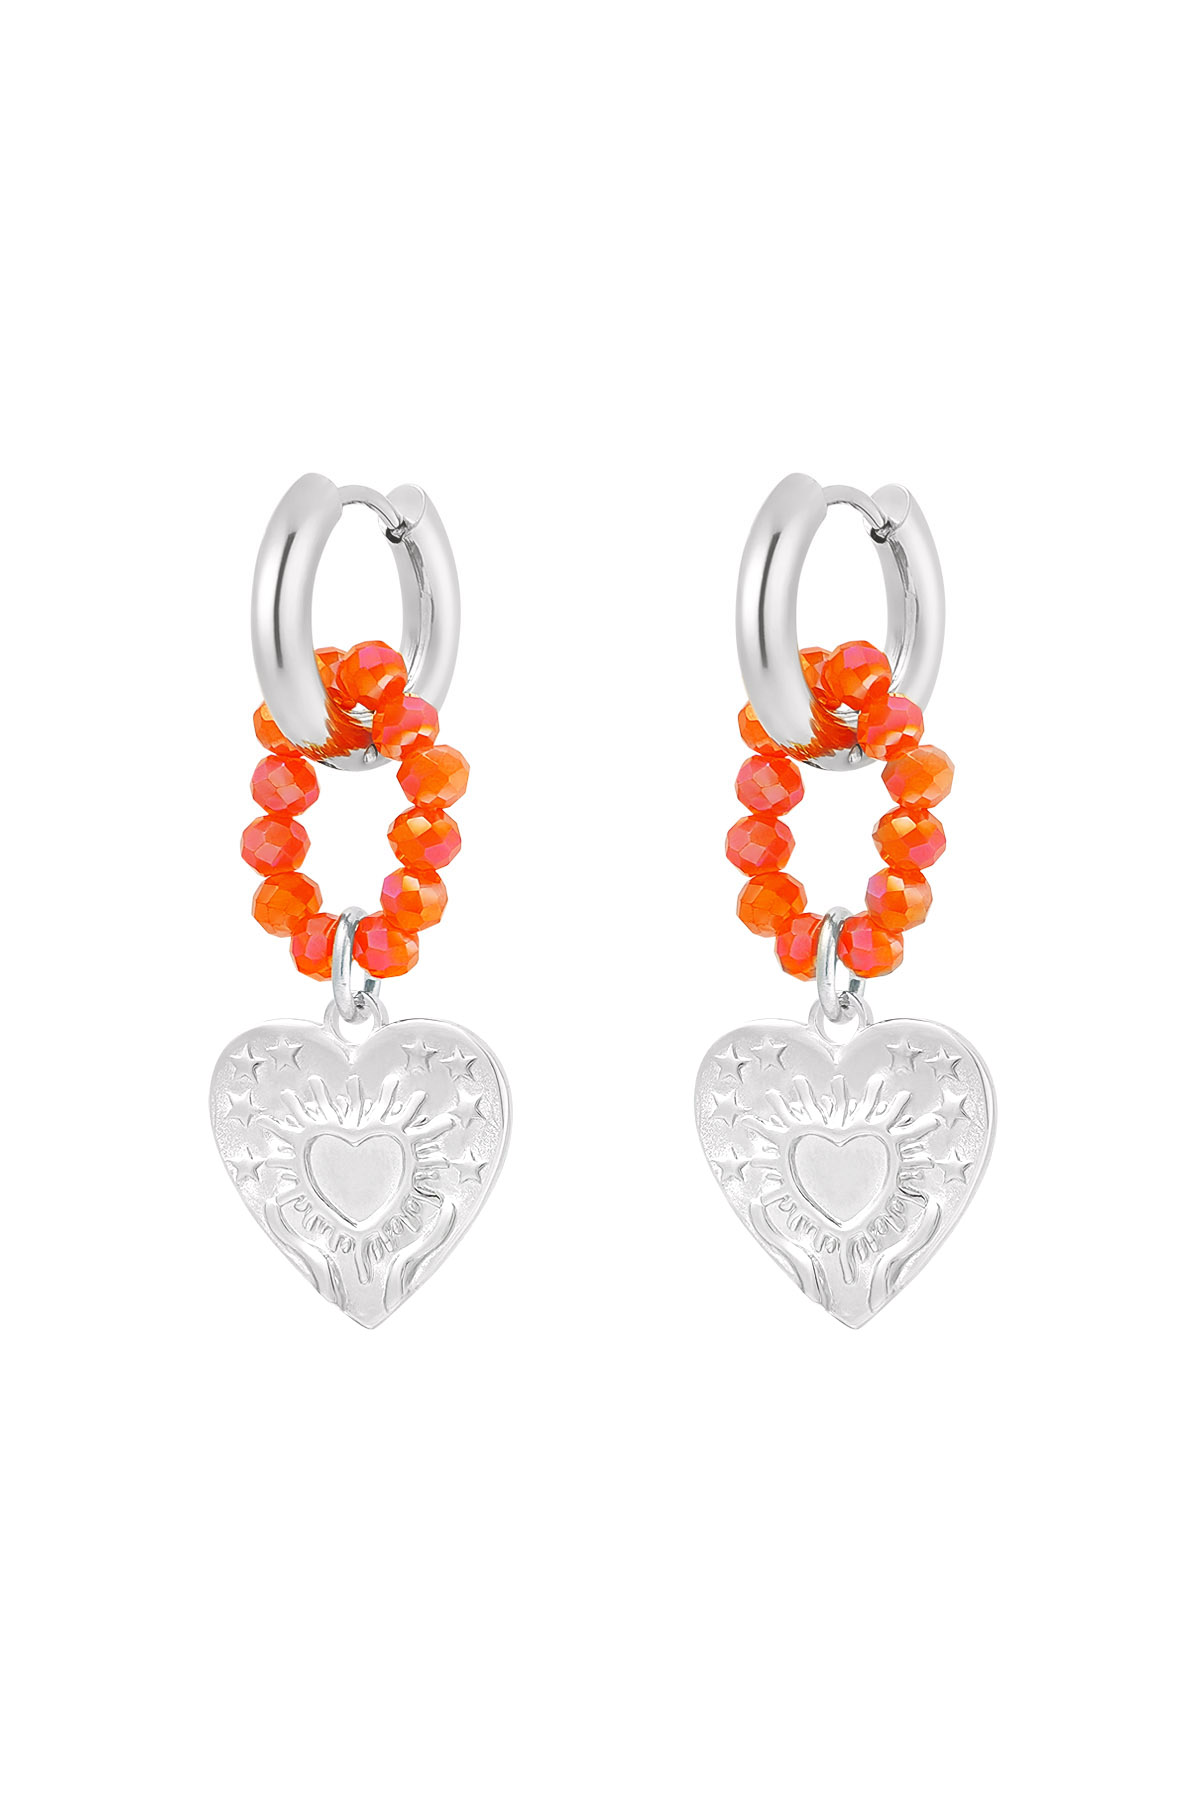 Ohrring Herzen und Perlen orange - silber 